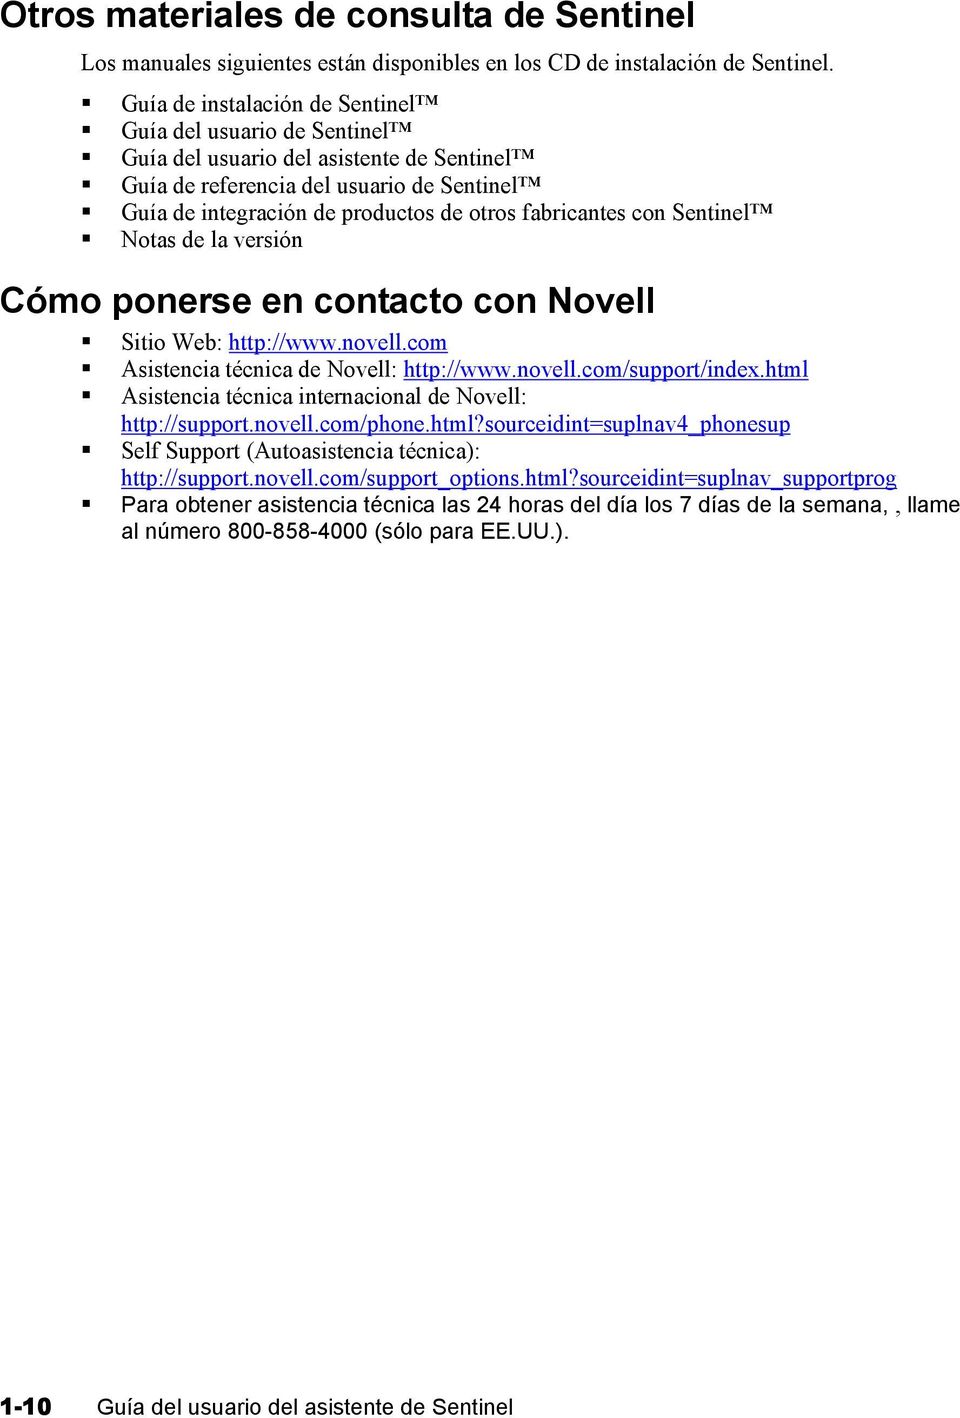 fabricantes con Sentinel Notas de la versión Cómo ponerse en contacto con Novell Sitio Web: http://www.novell.com Asistencia técnica de Novell: http://www.novell.com/support/index.